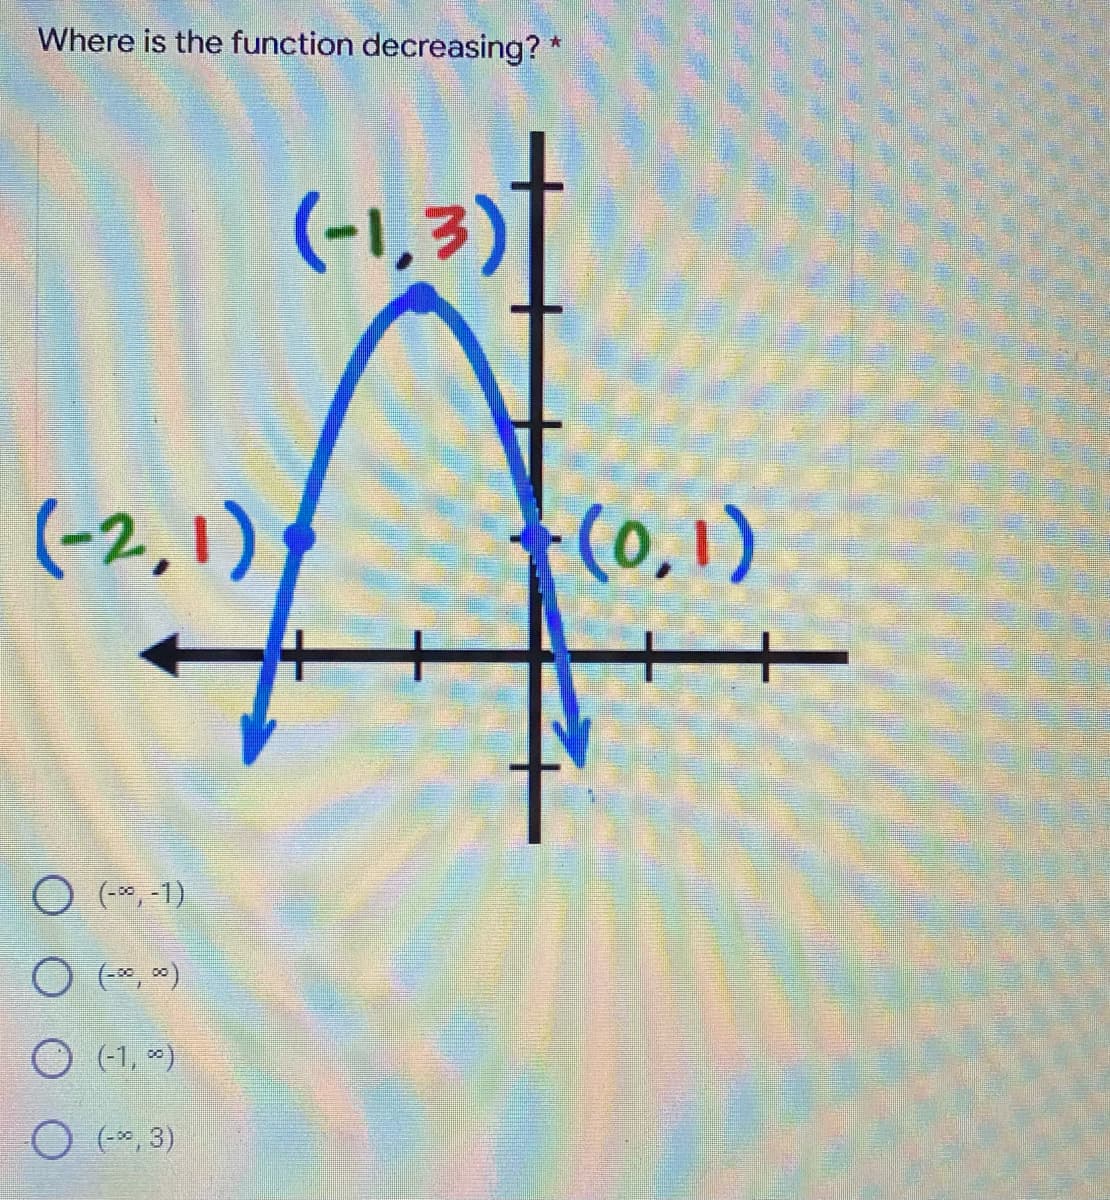 Where is the function decreasing?*
(-1,3)t
(-2,1) (0,1)
O (-*,-1)
O (*, )
O (-1, )
O (*, 3)
